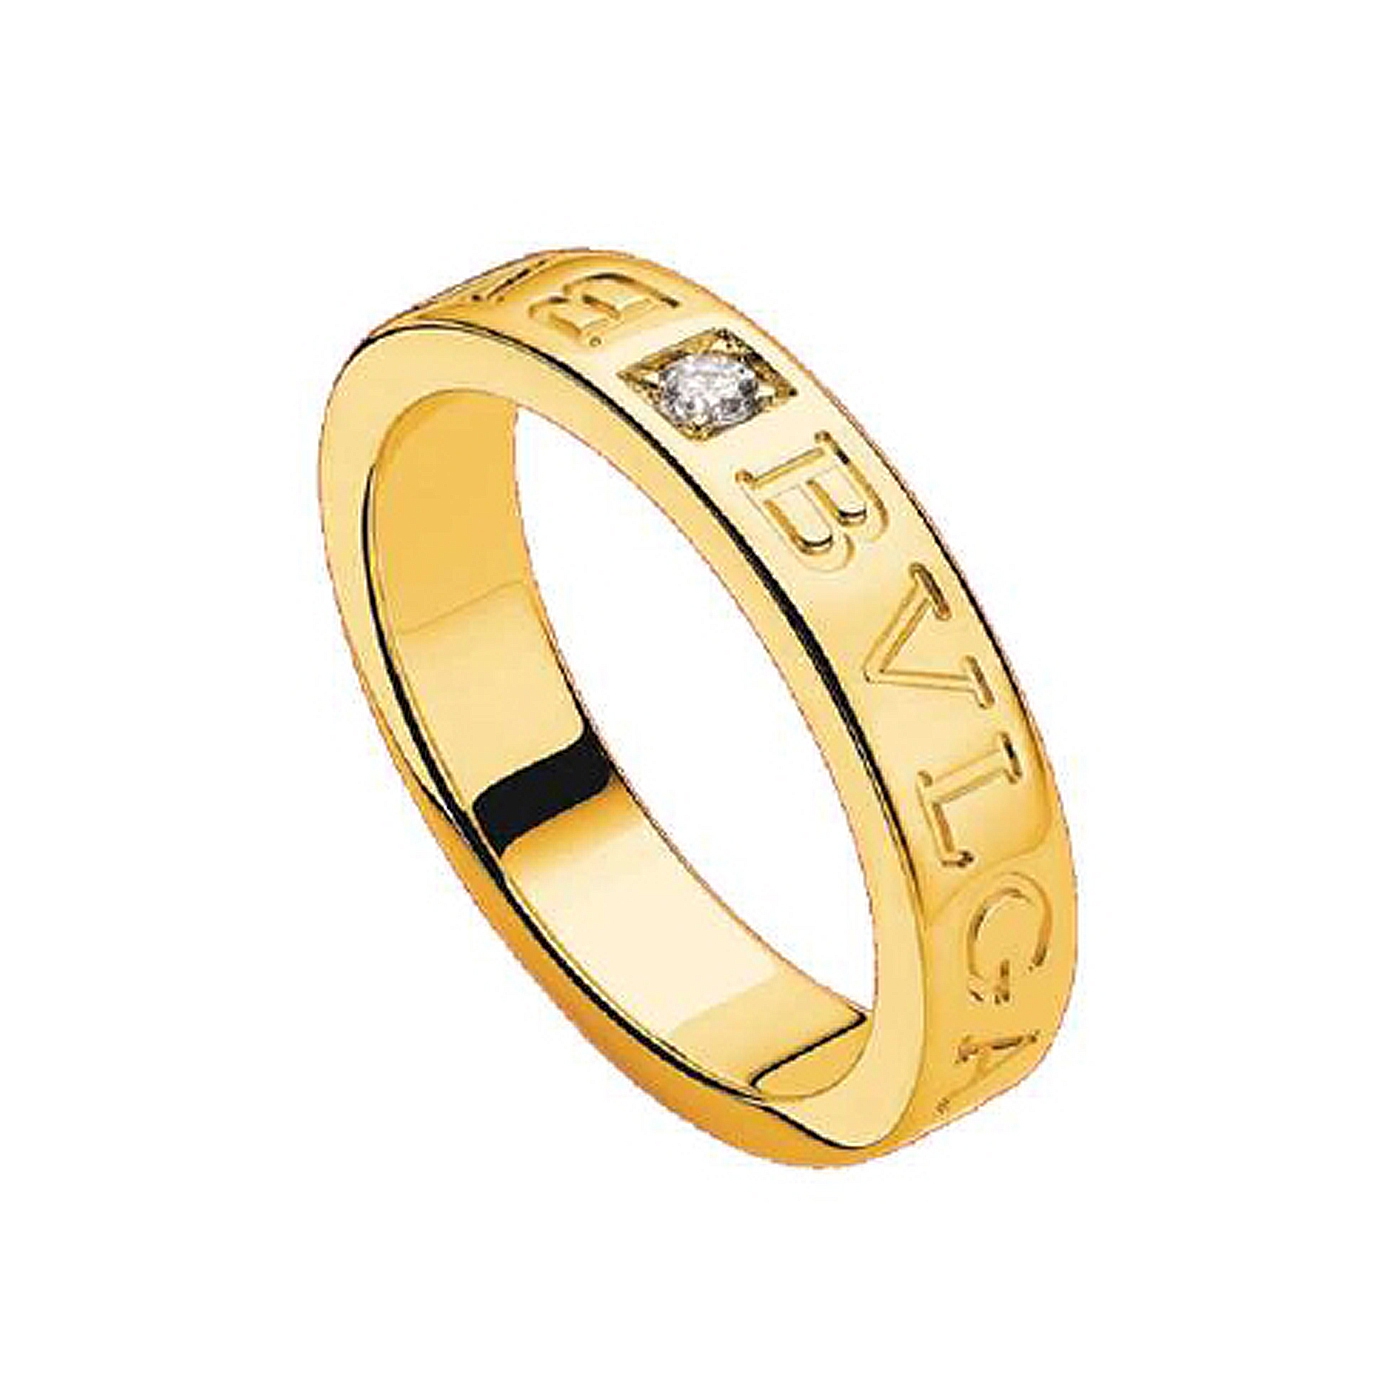 Bulgari Jewelry Bvlgari Bvlgari 18k Yellow Gold Ring with Diamond AN854462